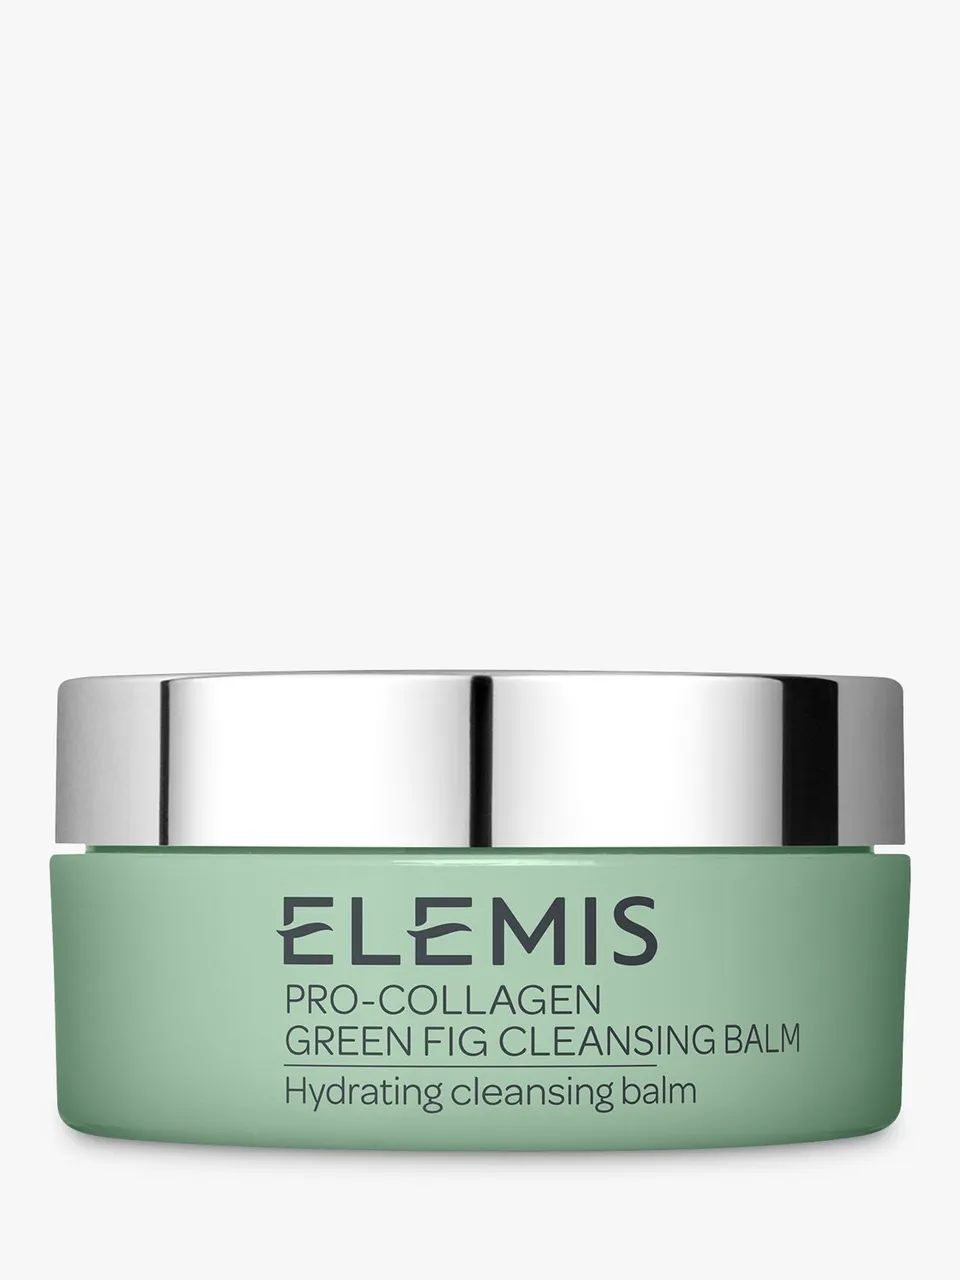 Elemis Pro-Collagen Green Fig Cleansing Balm, 100g - Unisex